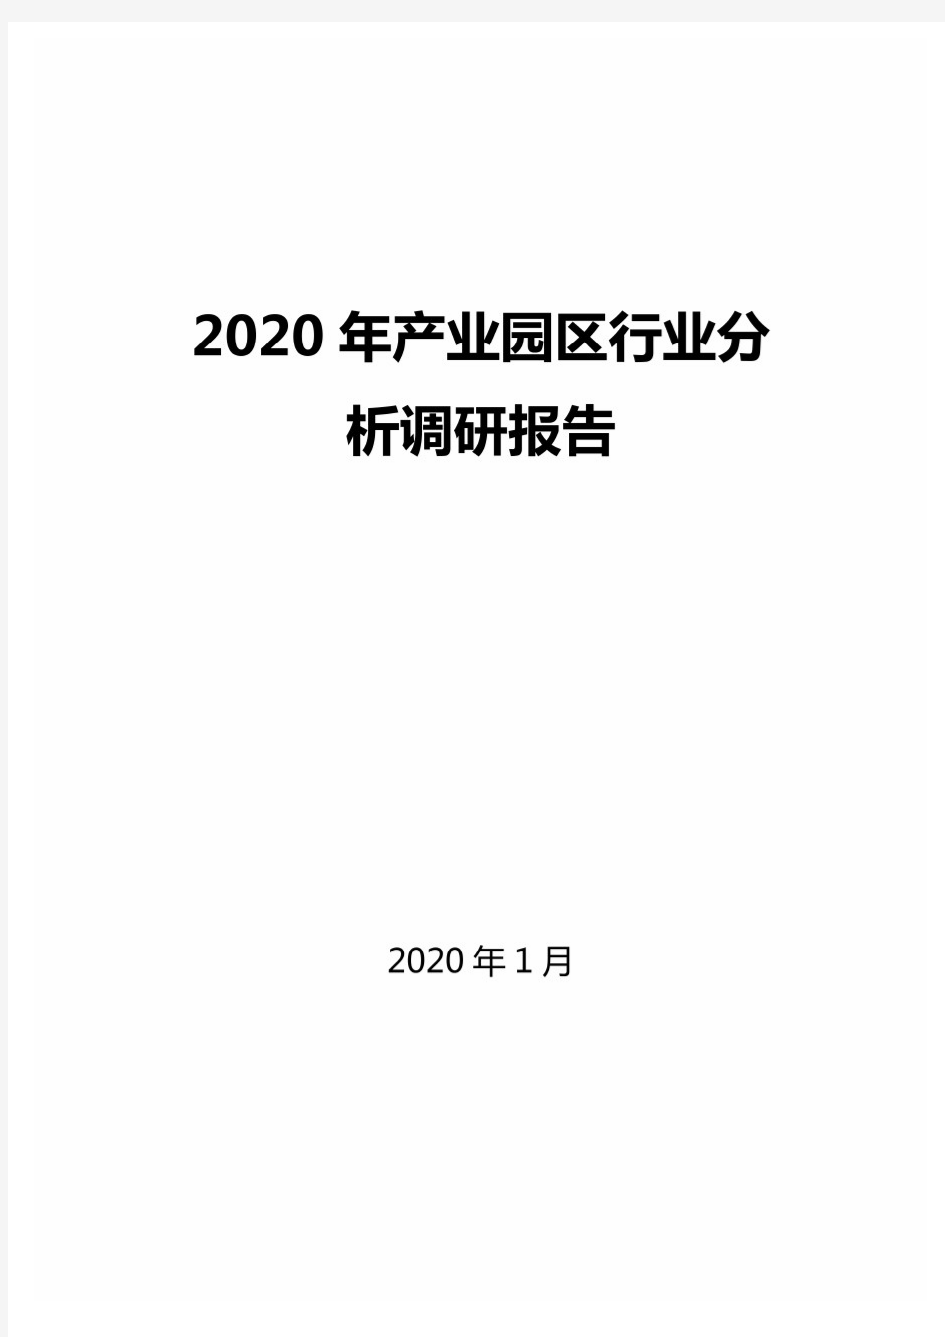 2020年产业园区行业分析调研报告